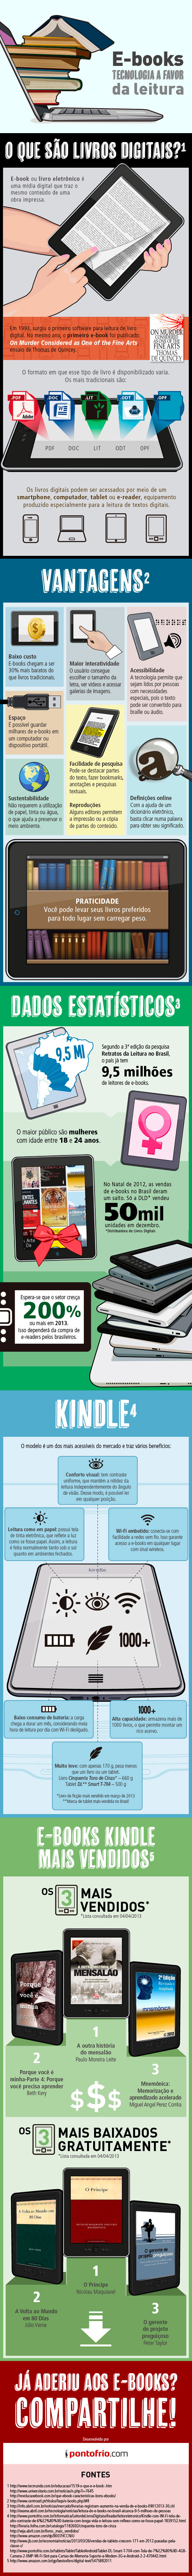 Infografico - O mercado de e-books no Brasil